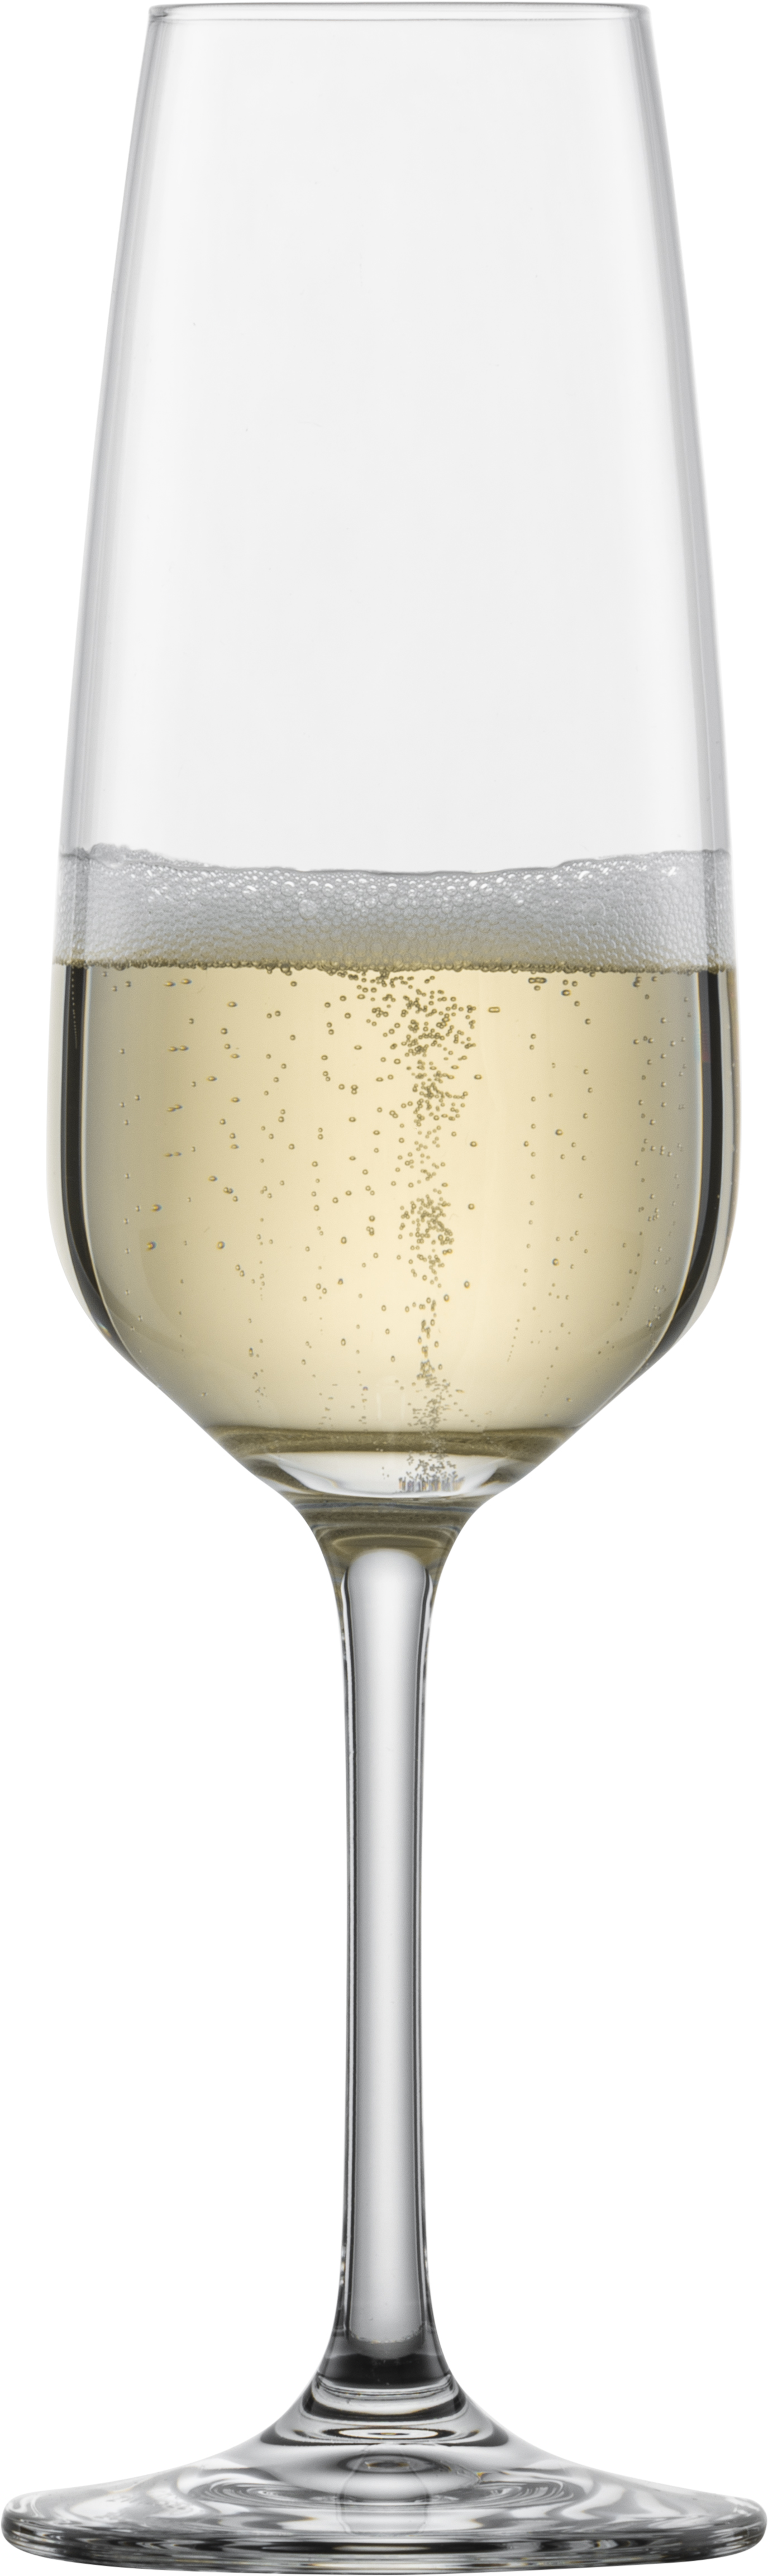 Zwiesel Sekt/Champagner Serie Taste mit Eichung bei 0,1 Liter